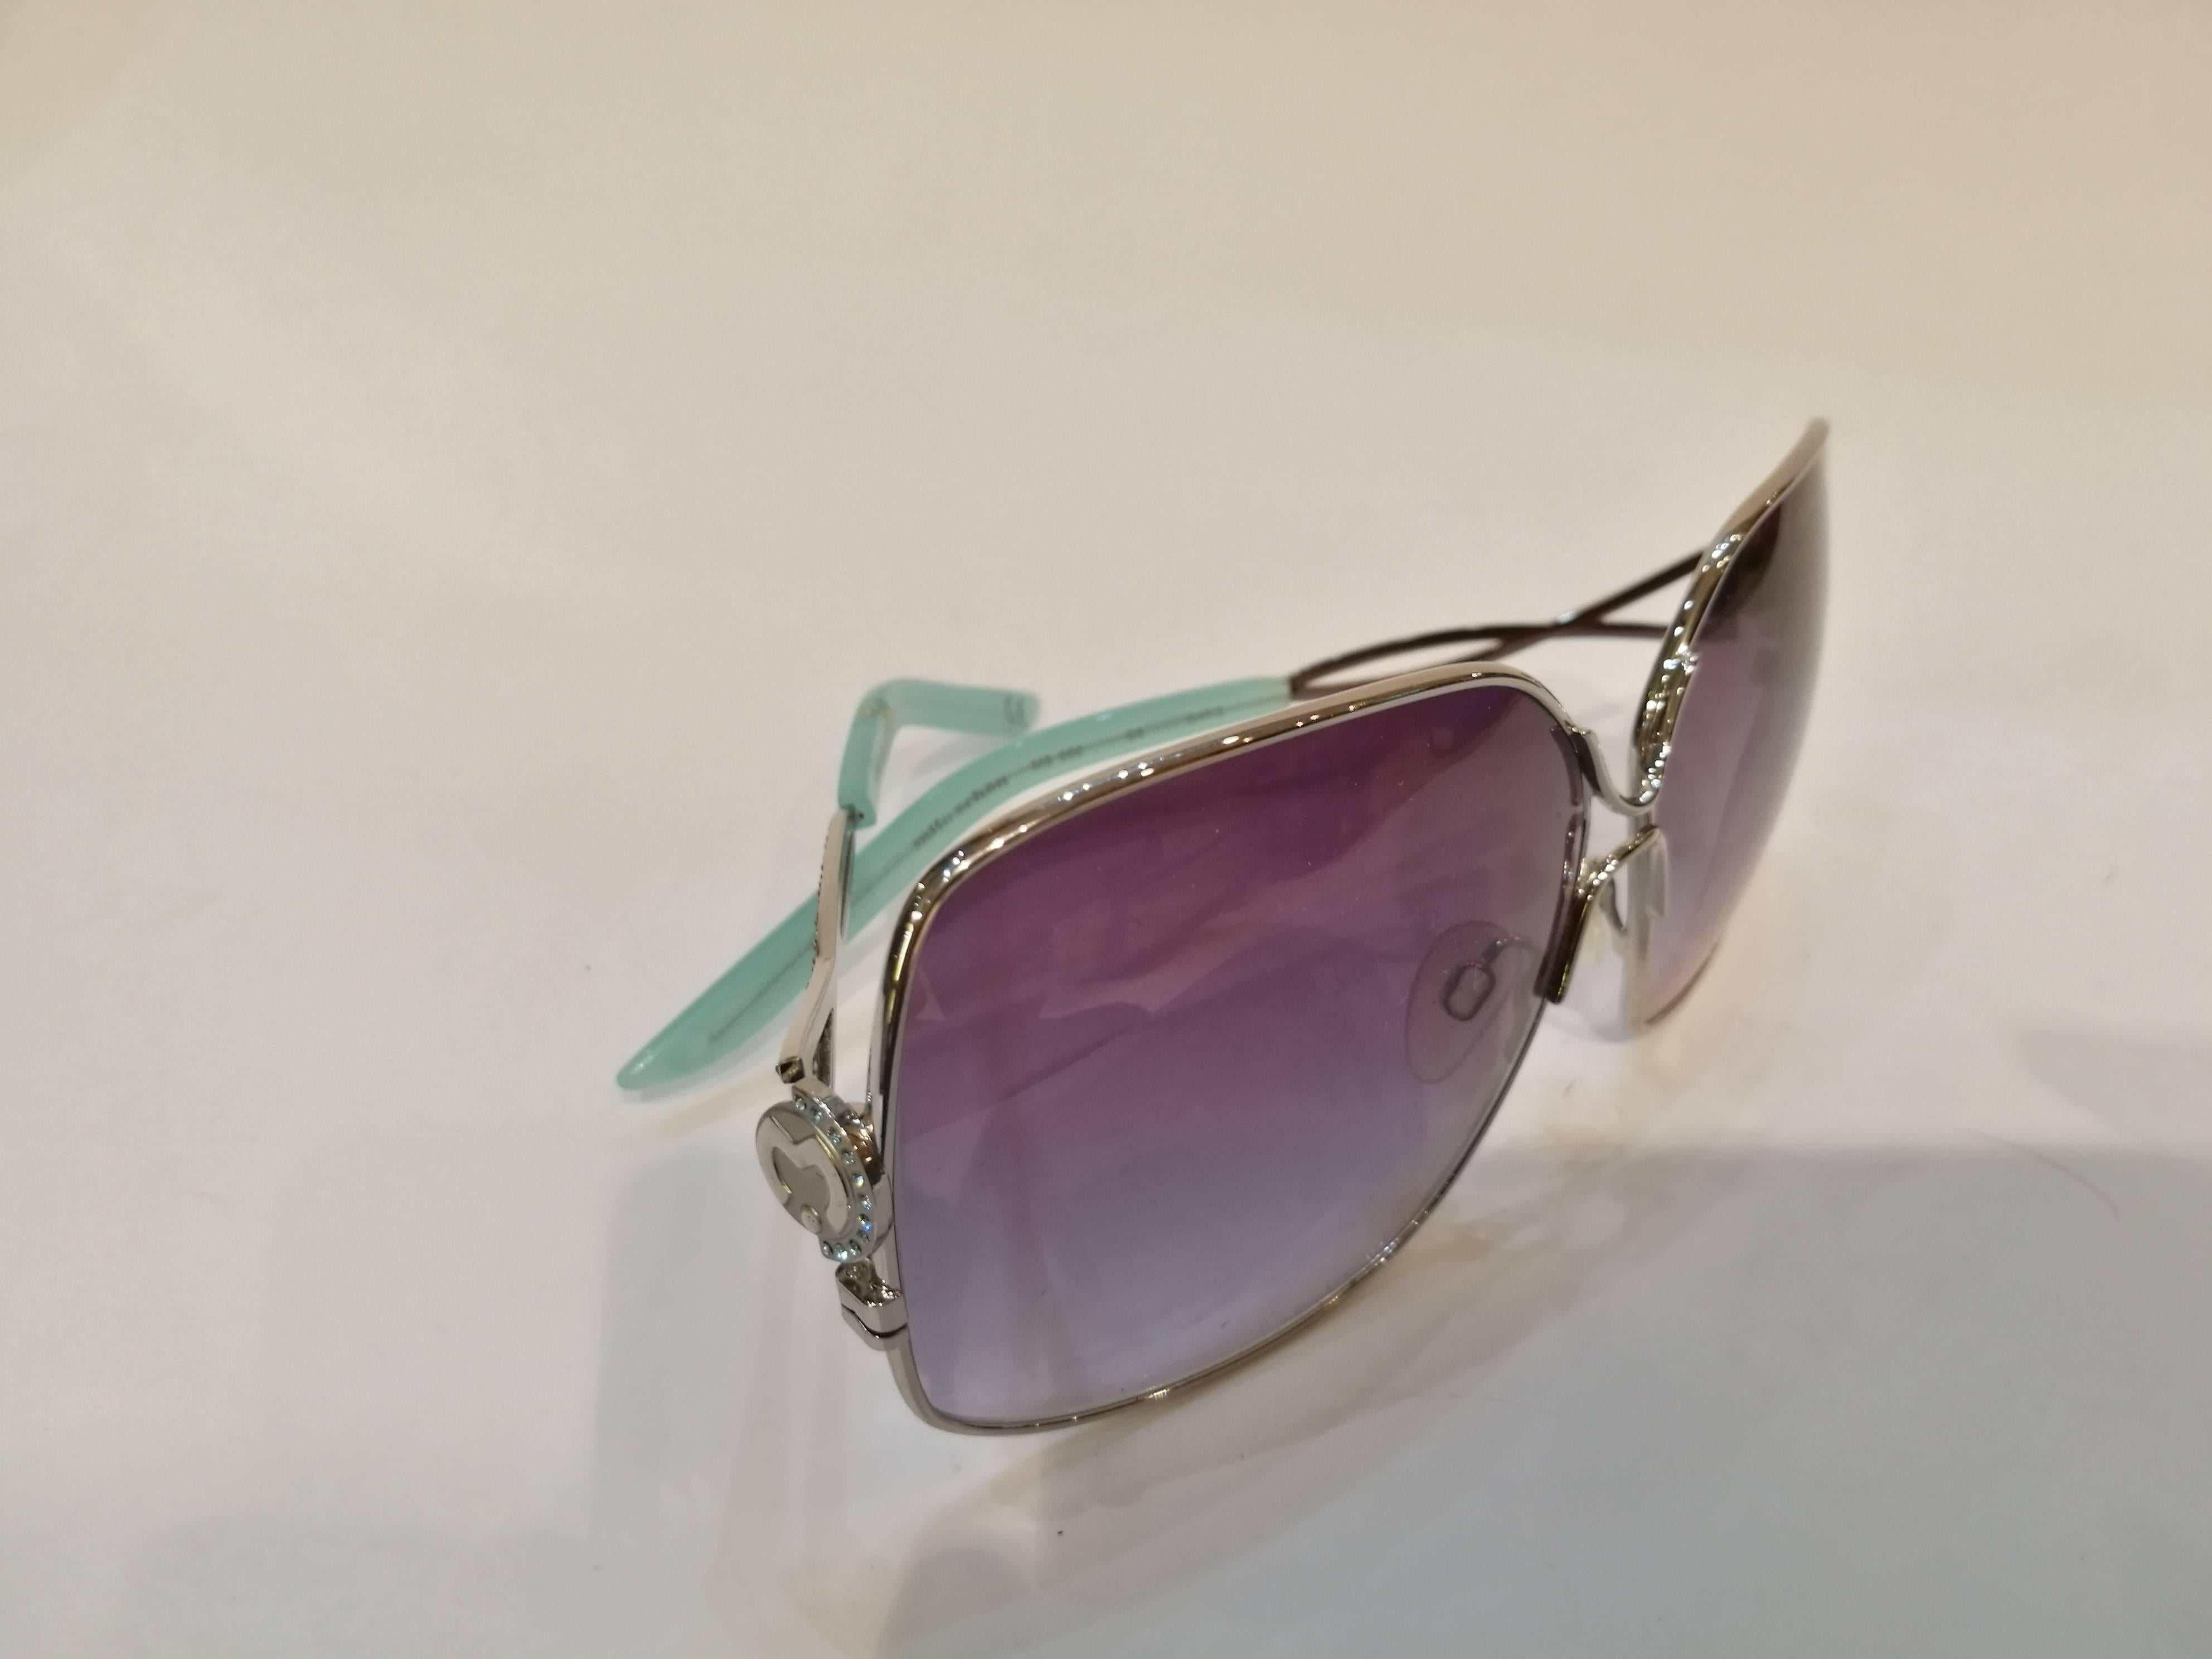 Mila Schon Multitone Sunglasses In Excellent Condition For Sale In Capri, IT